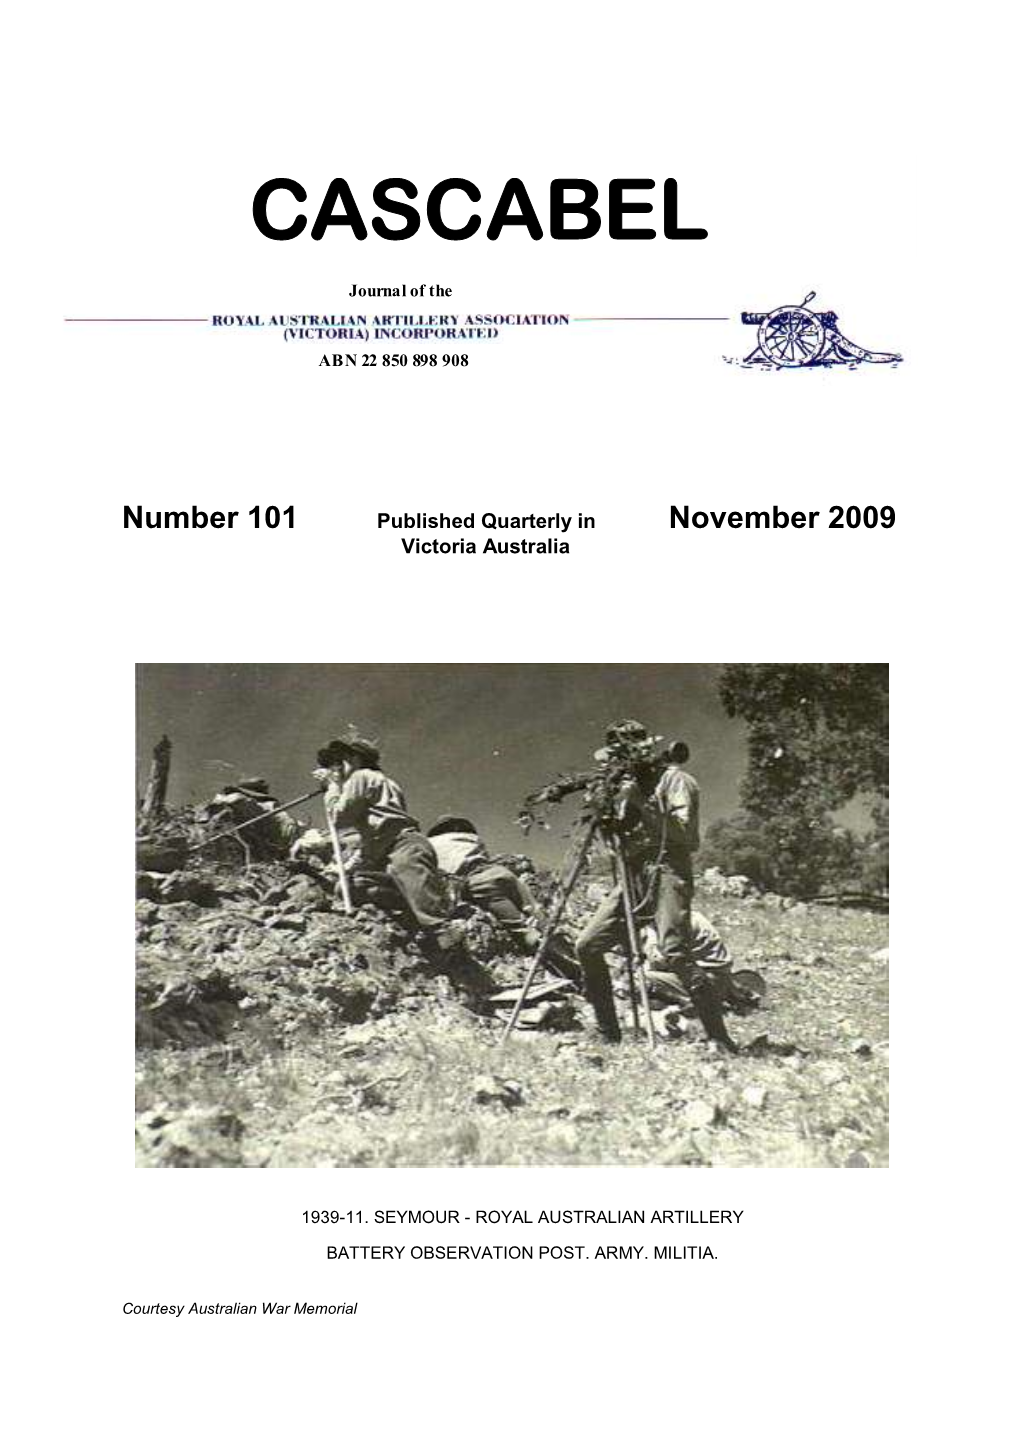 Issue101 – Nov 2009